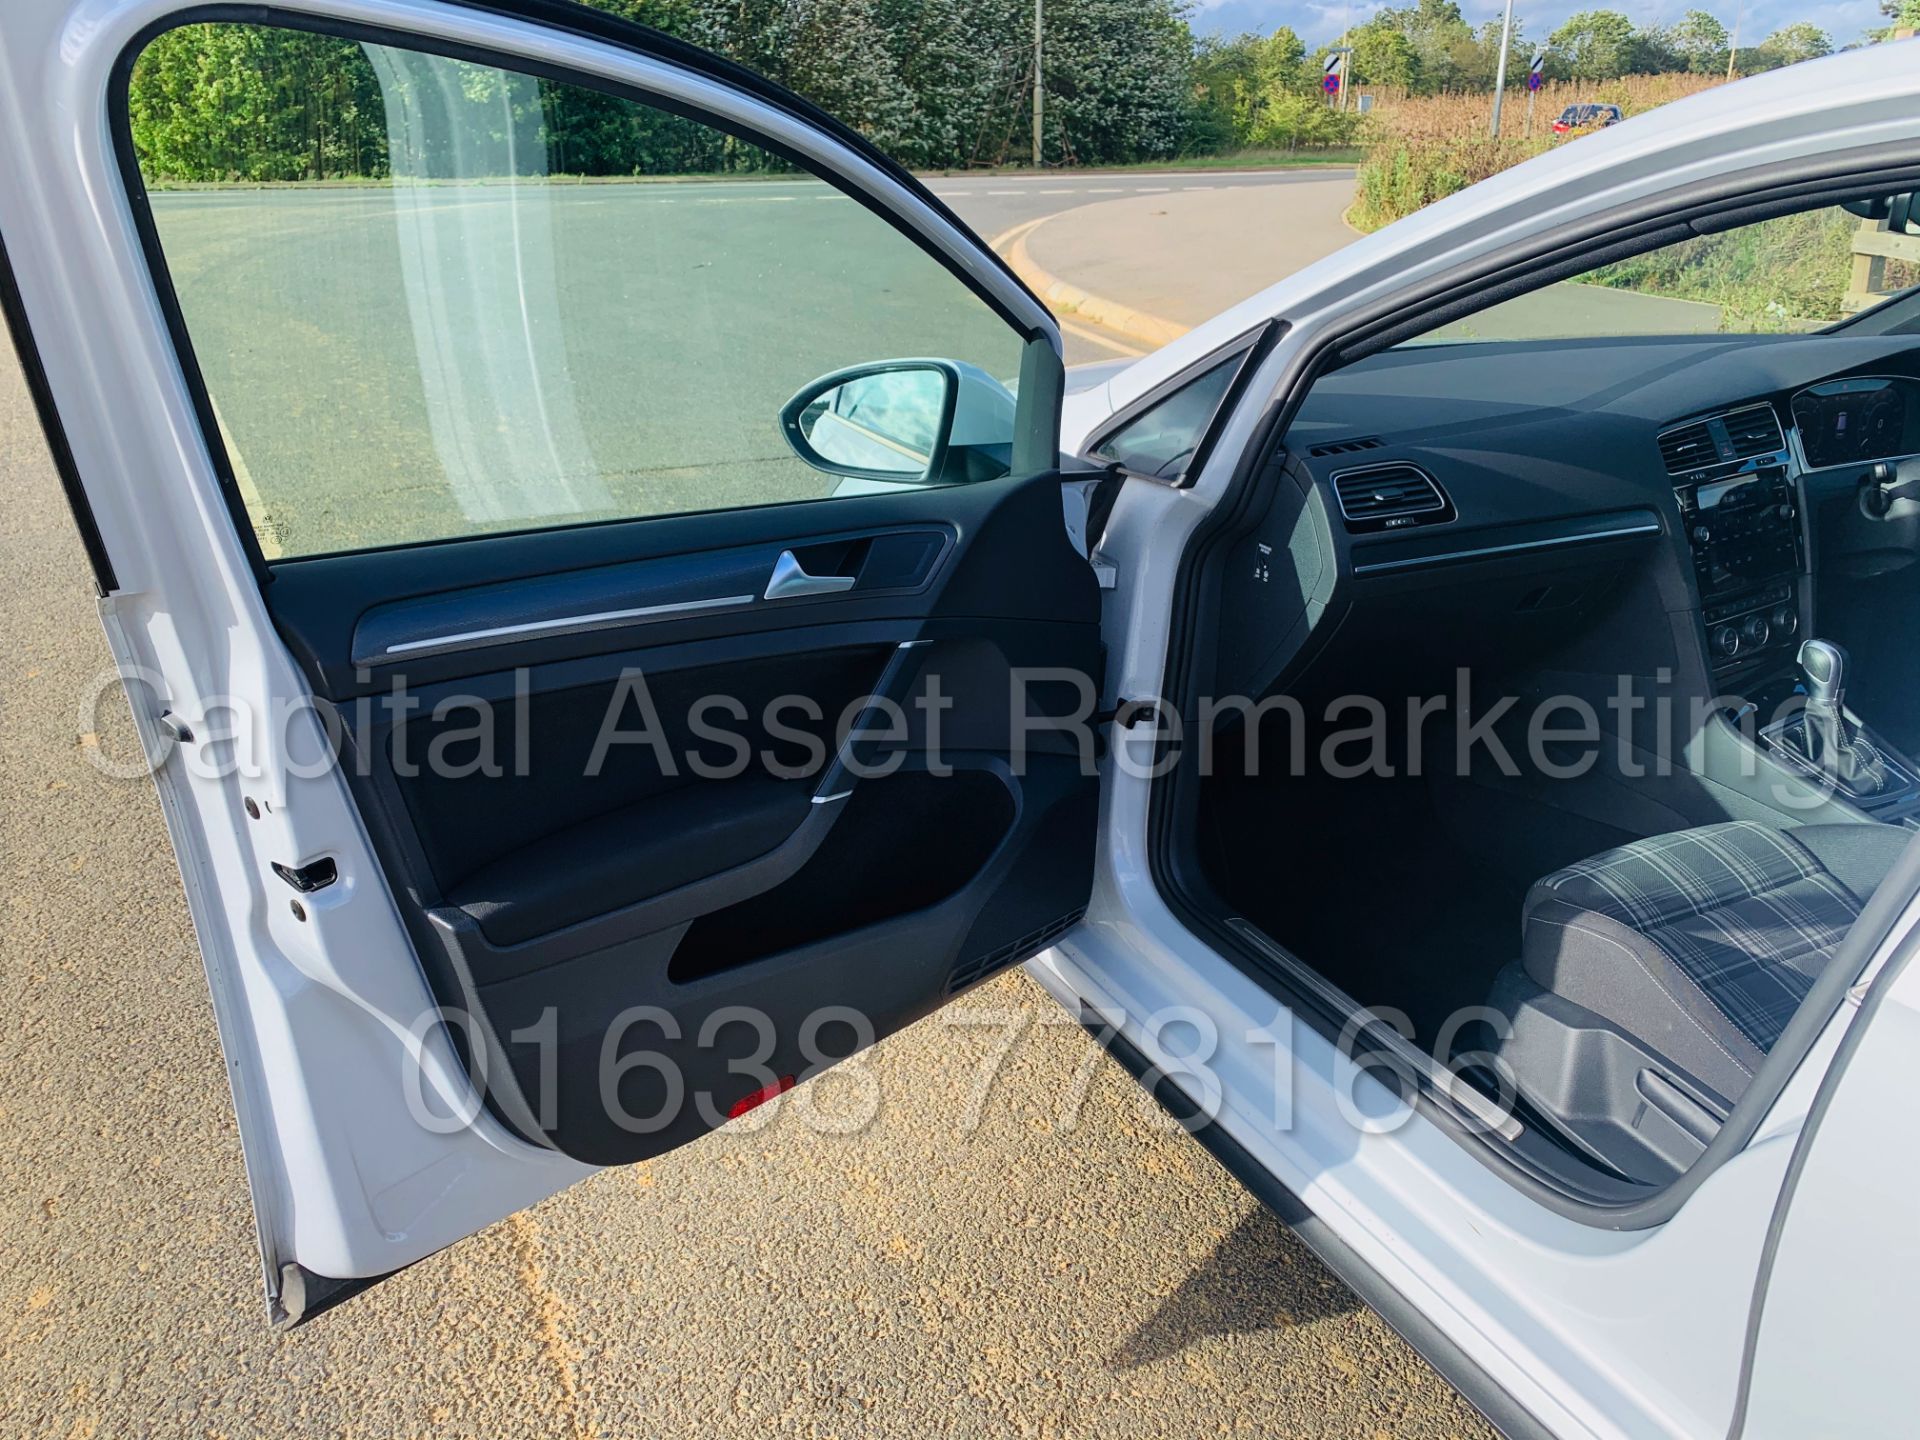 (On Sale) VOLKSWAGEN GOLF *GTD EDITION* 5 DOOR (2018 - NEW MODEL) '2.0 TDI - 184 BHP - AUTO DSG' - Image 21 of 56